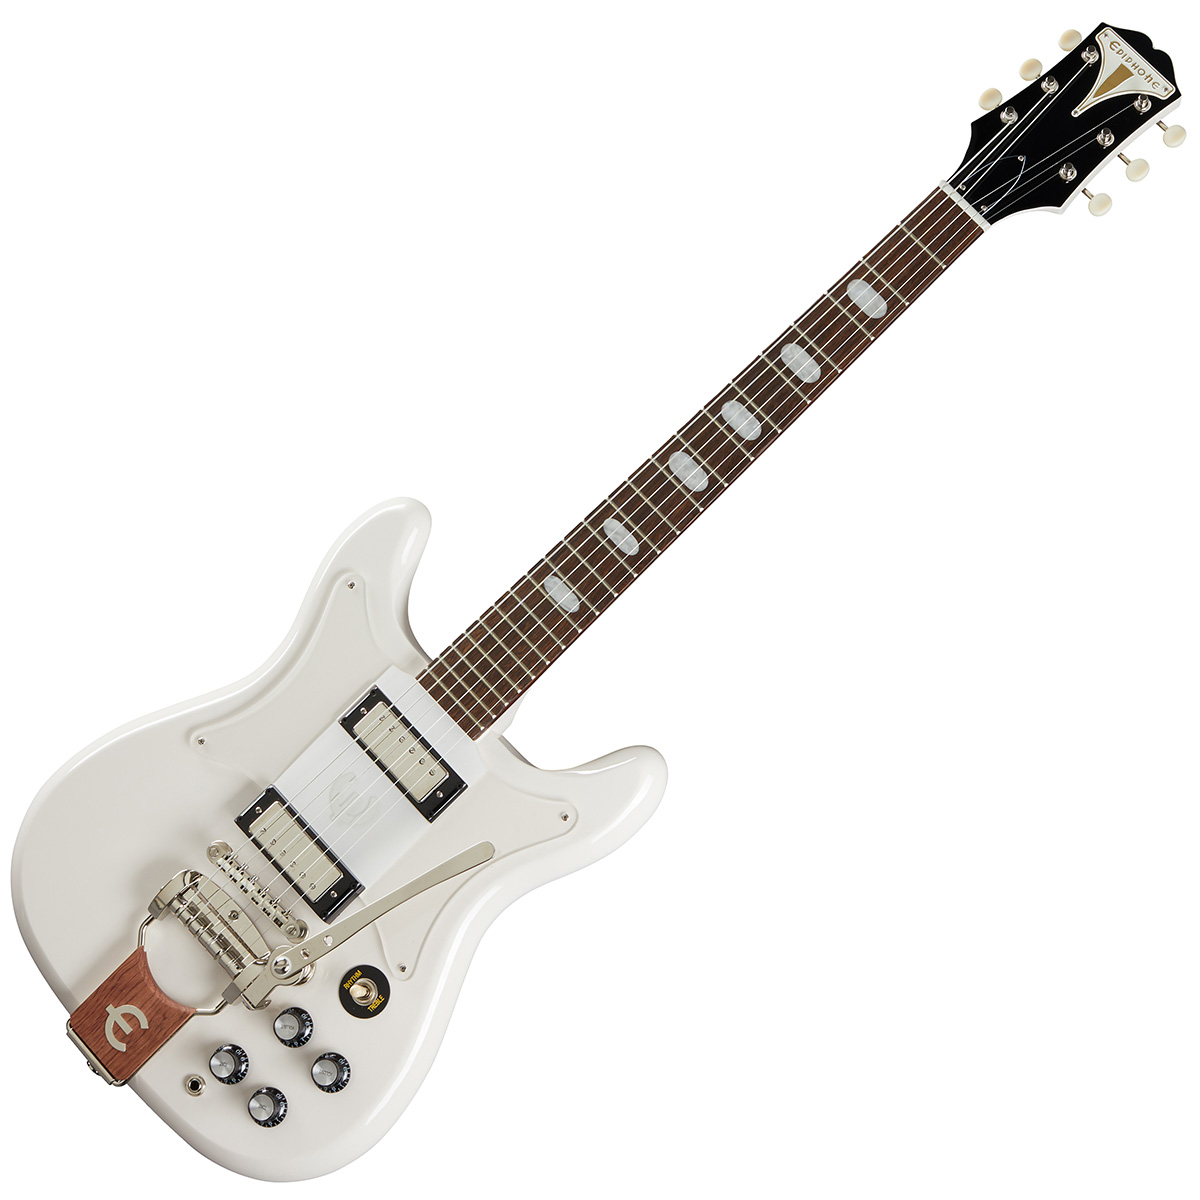 Epiphone Crestwood Custom Polaris White エレキギター ホワイト